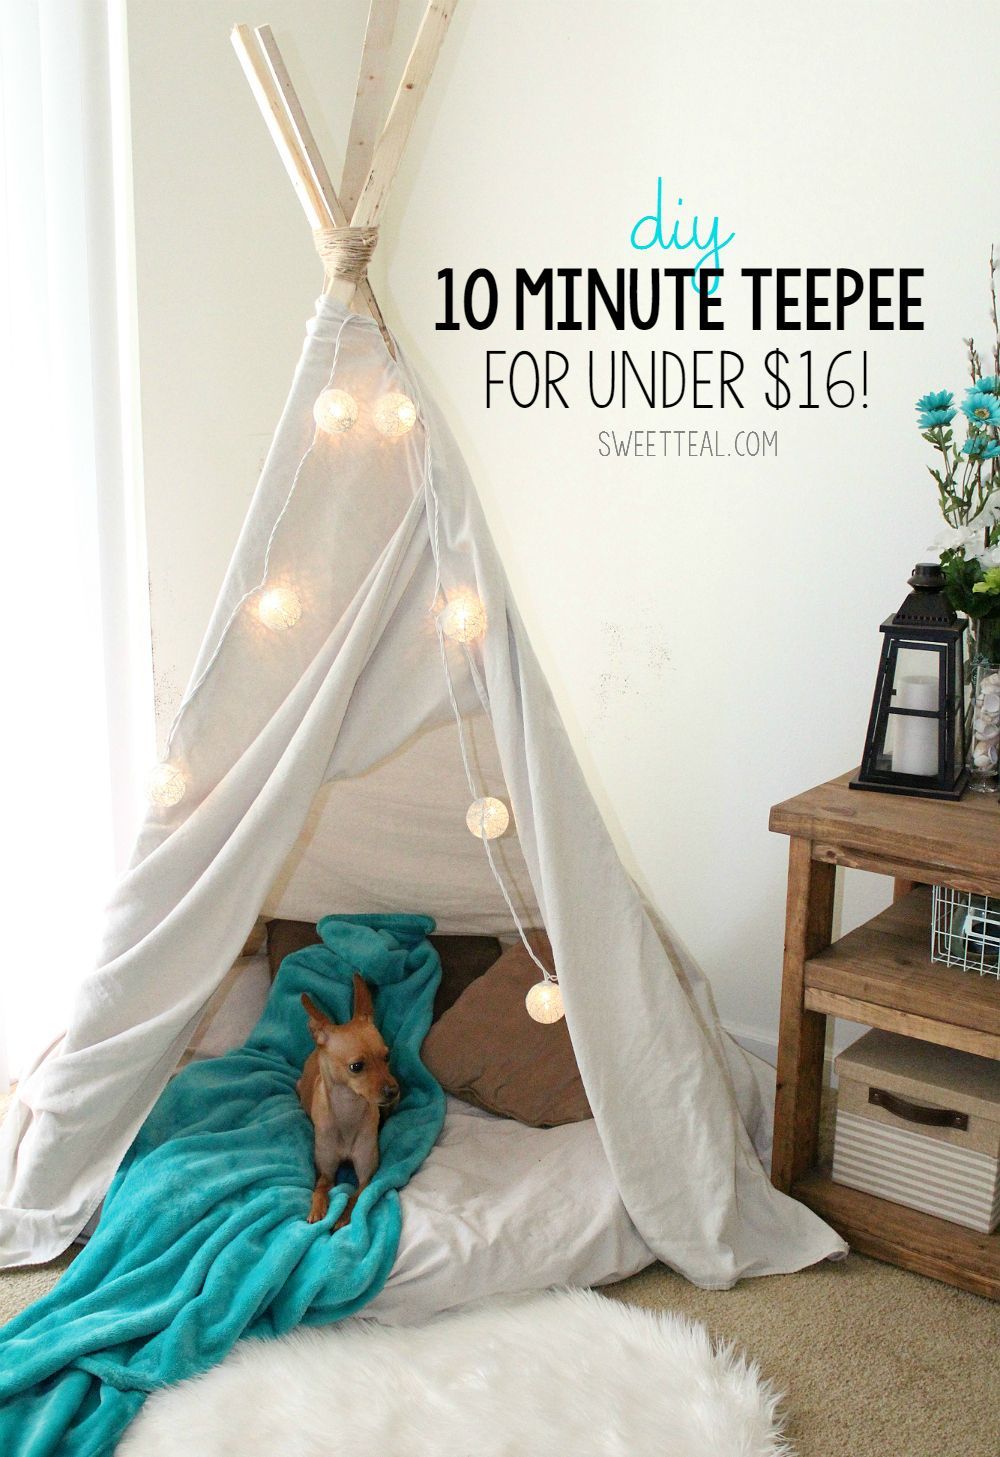 DIY 10 Minute Teepee for Under $16! | Sweet Teal - DIY 10 Minute Teepee for Under $16! | Sweet Teal -   22 diy Dog tent ideas